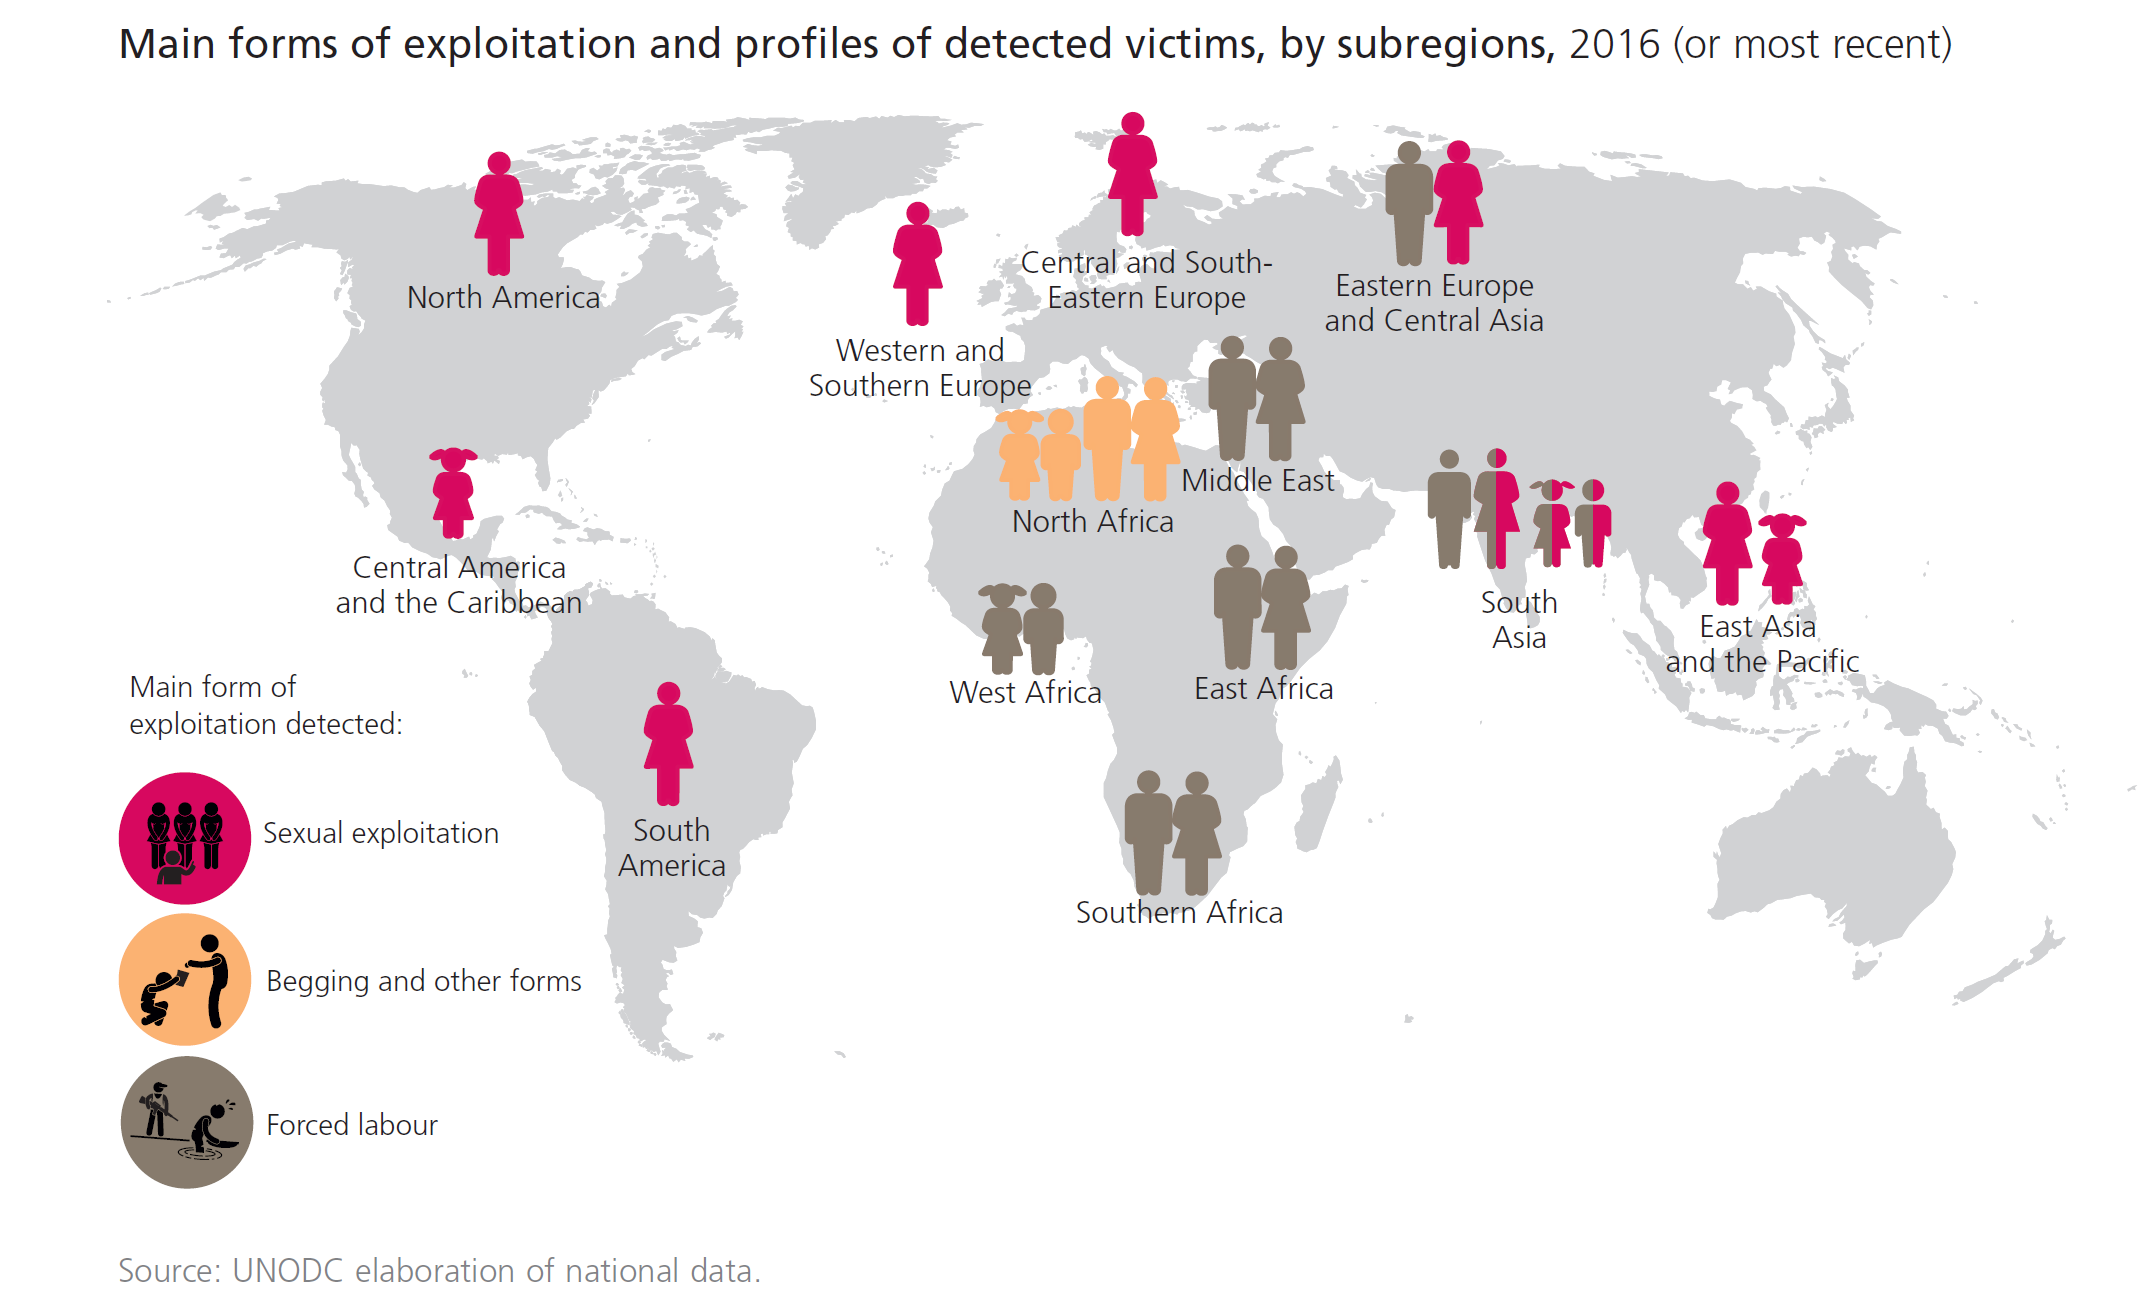 Mapa amb la incidència de la tracta i les seues finalitats (explotació sexual, pidolaires, i treball forçat) per àrees del món